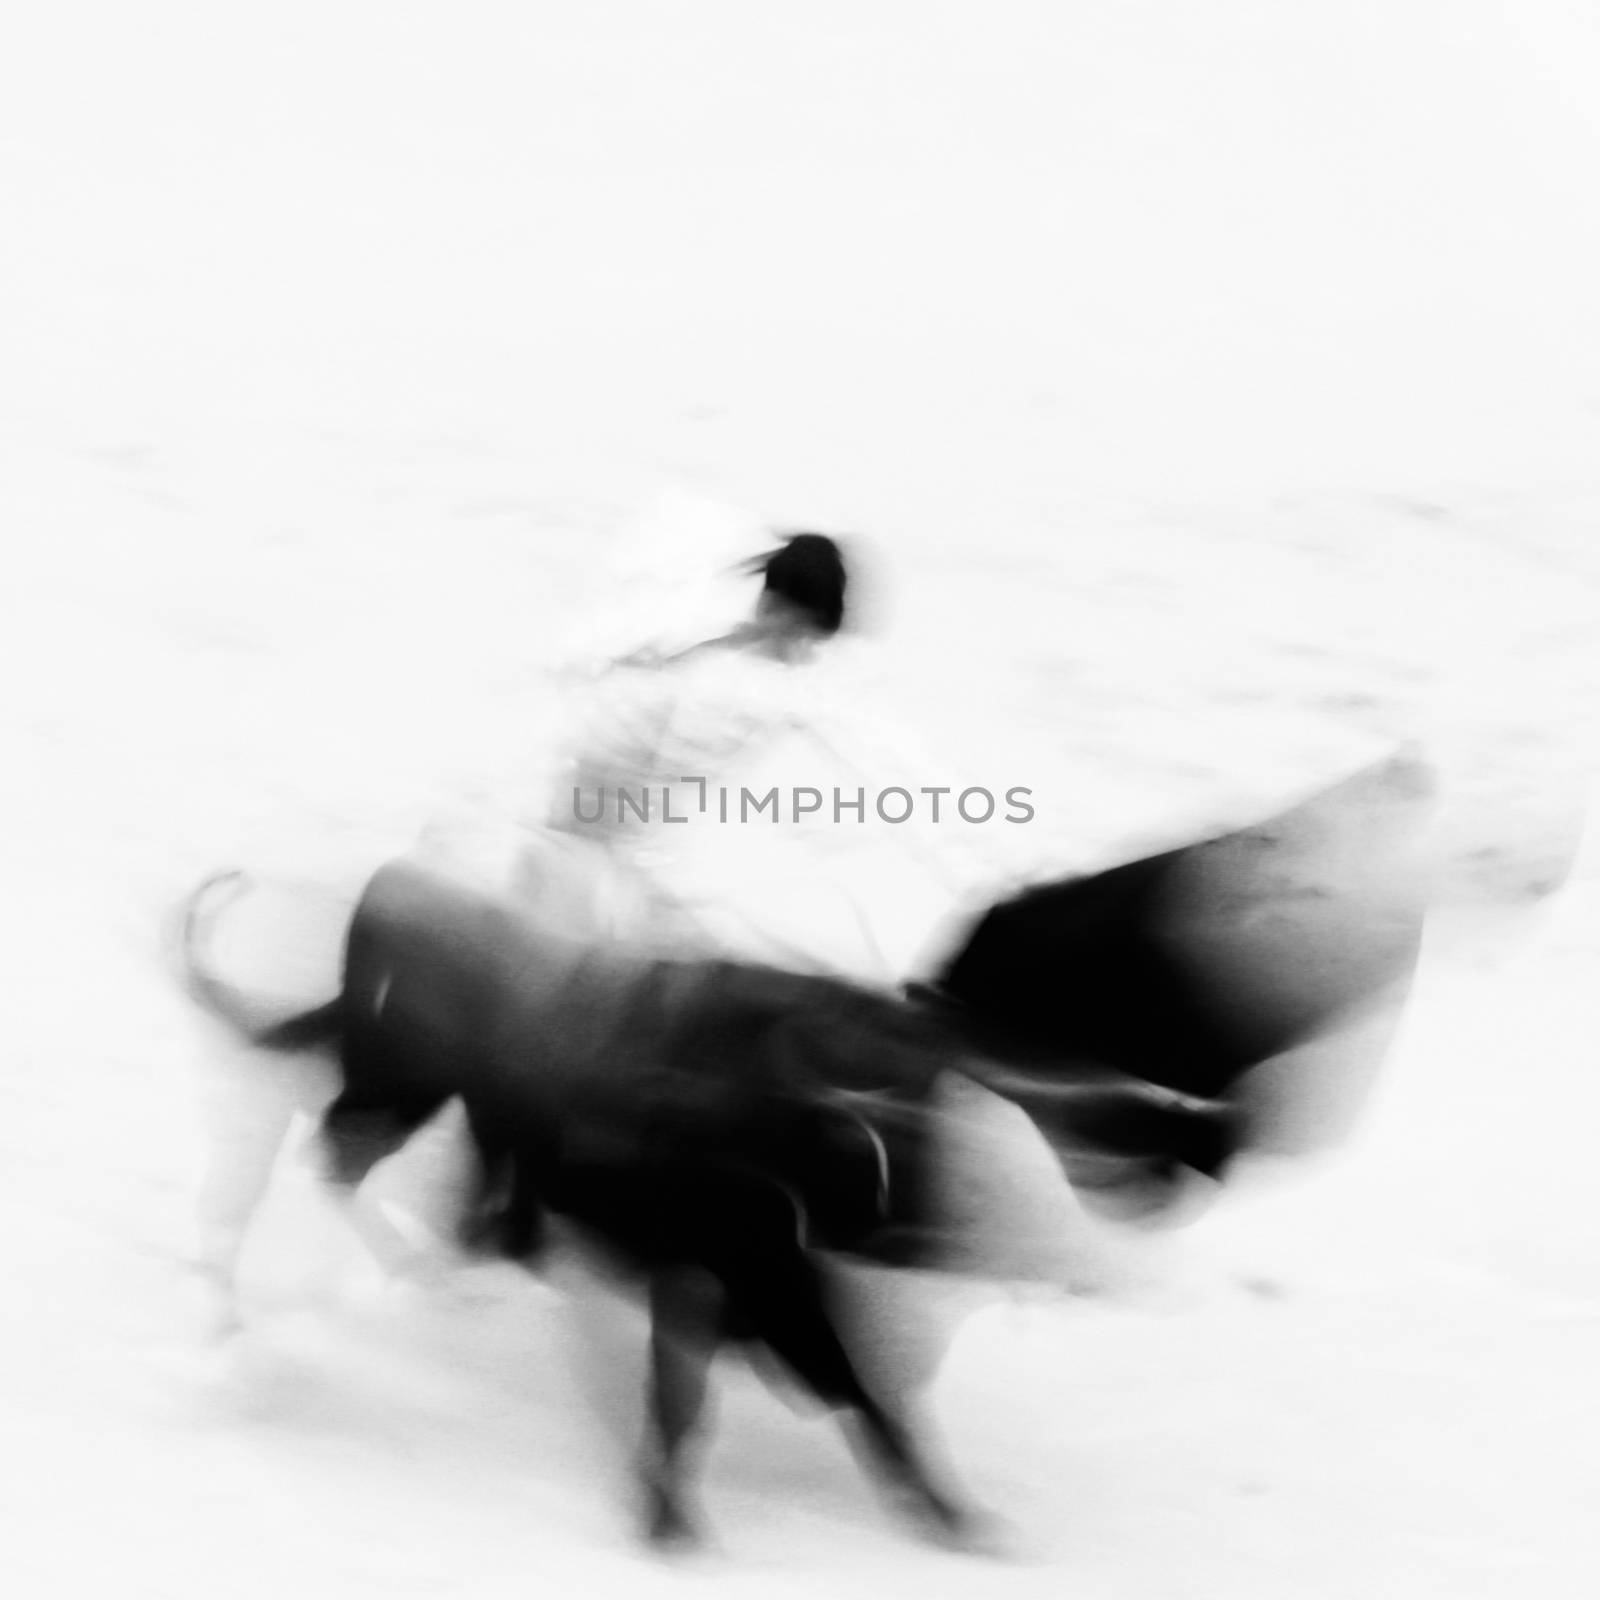 Bullfigting in bullring Las Ventas, Madrid, Spain. Abstract black and white image.